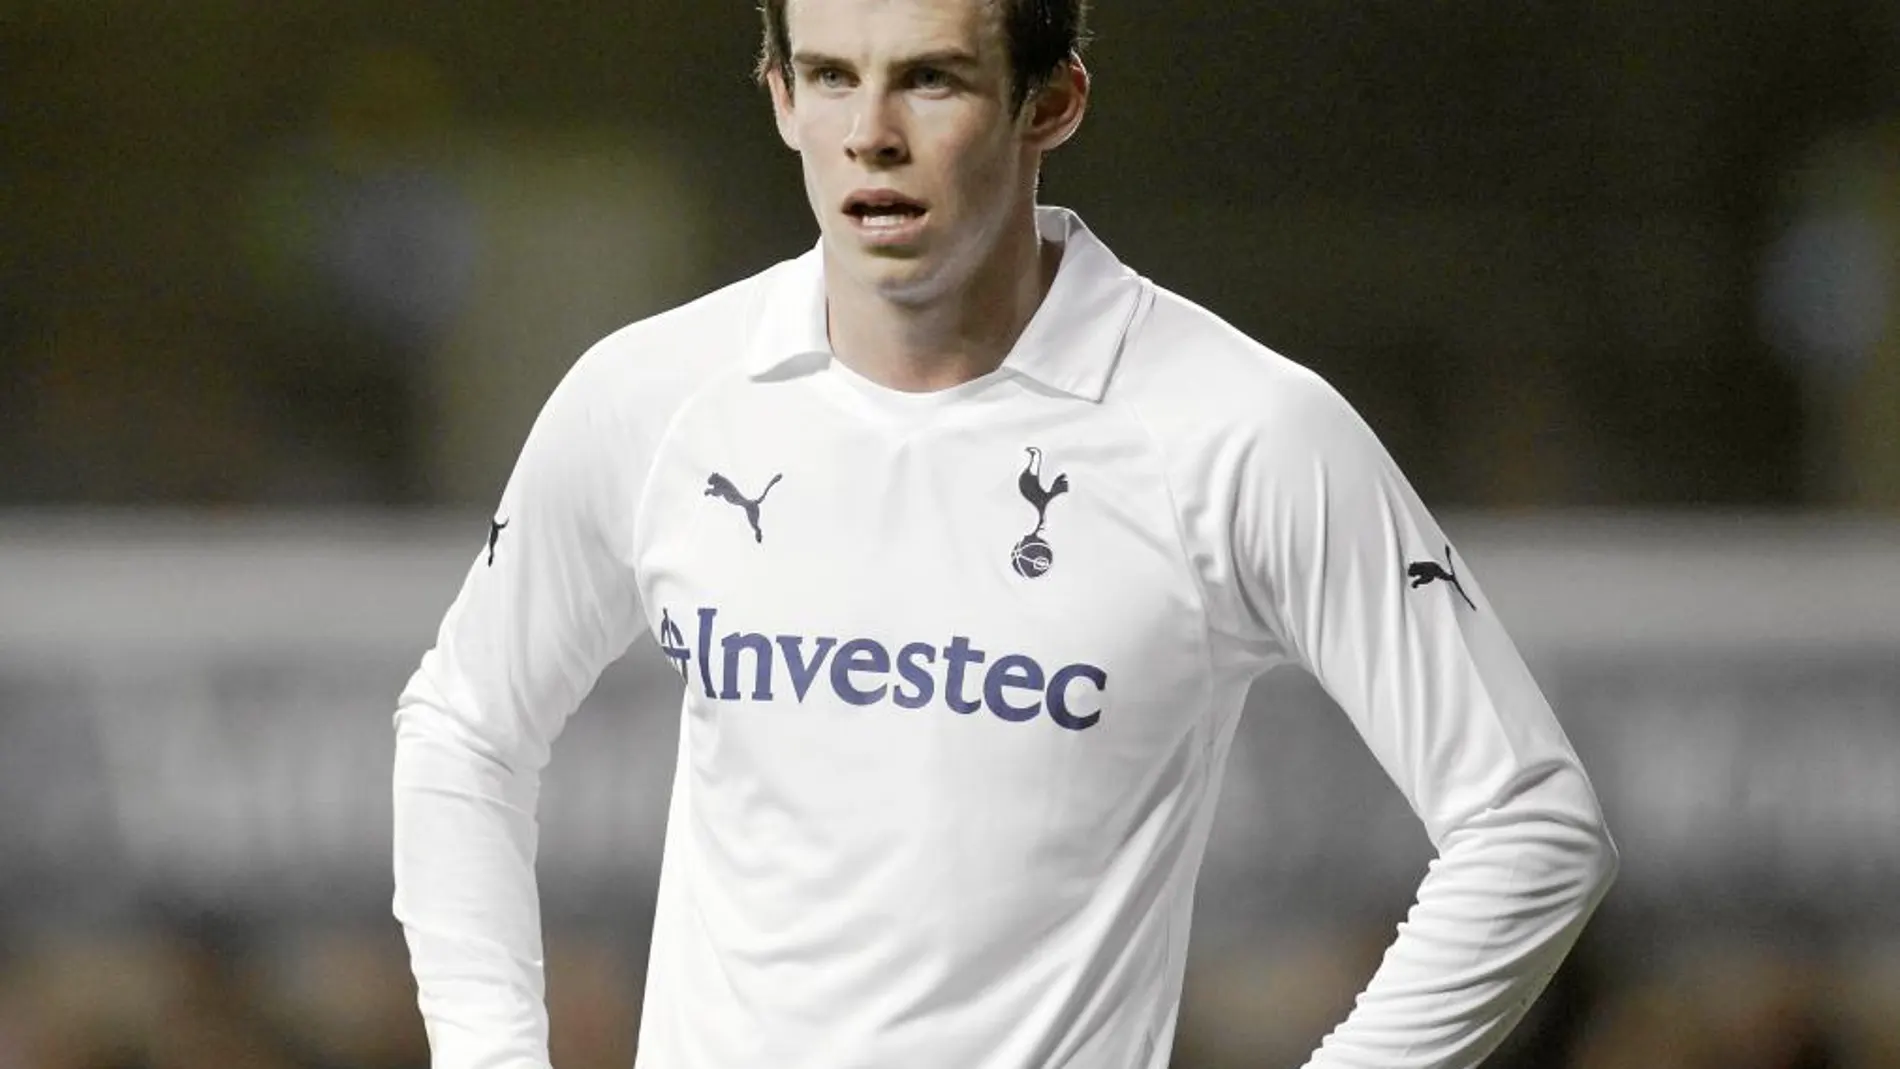 Gareth Bale sólo quiere jugar en el Madrid esta temporada